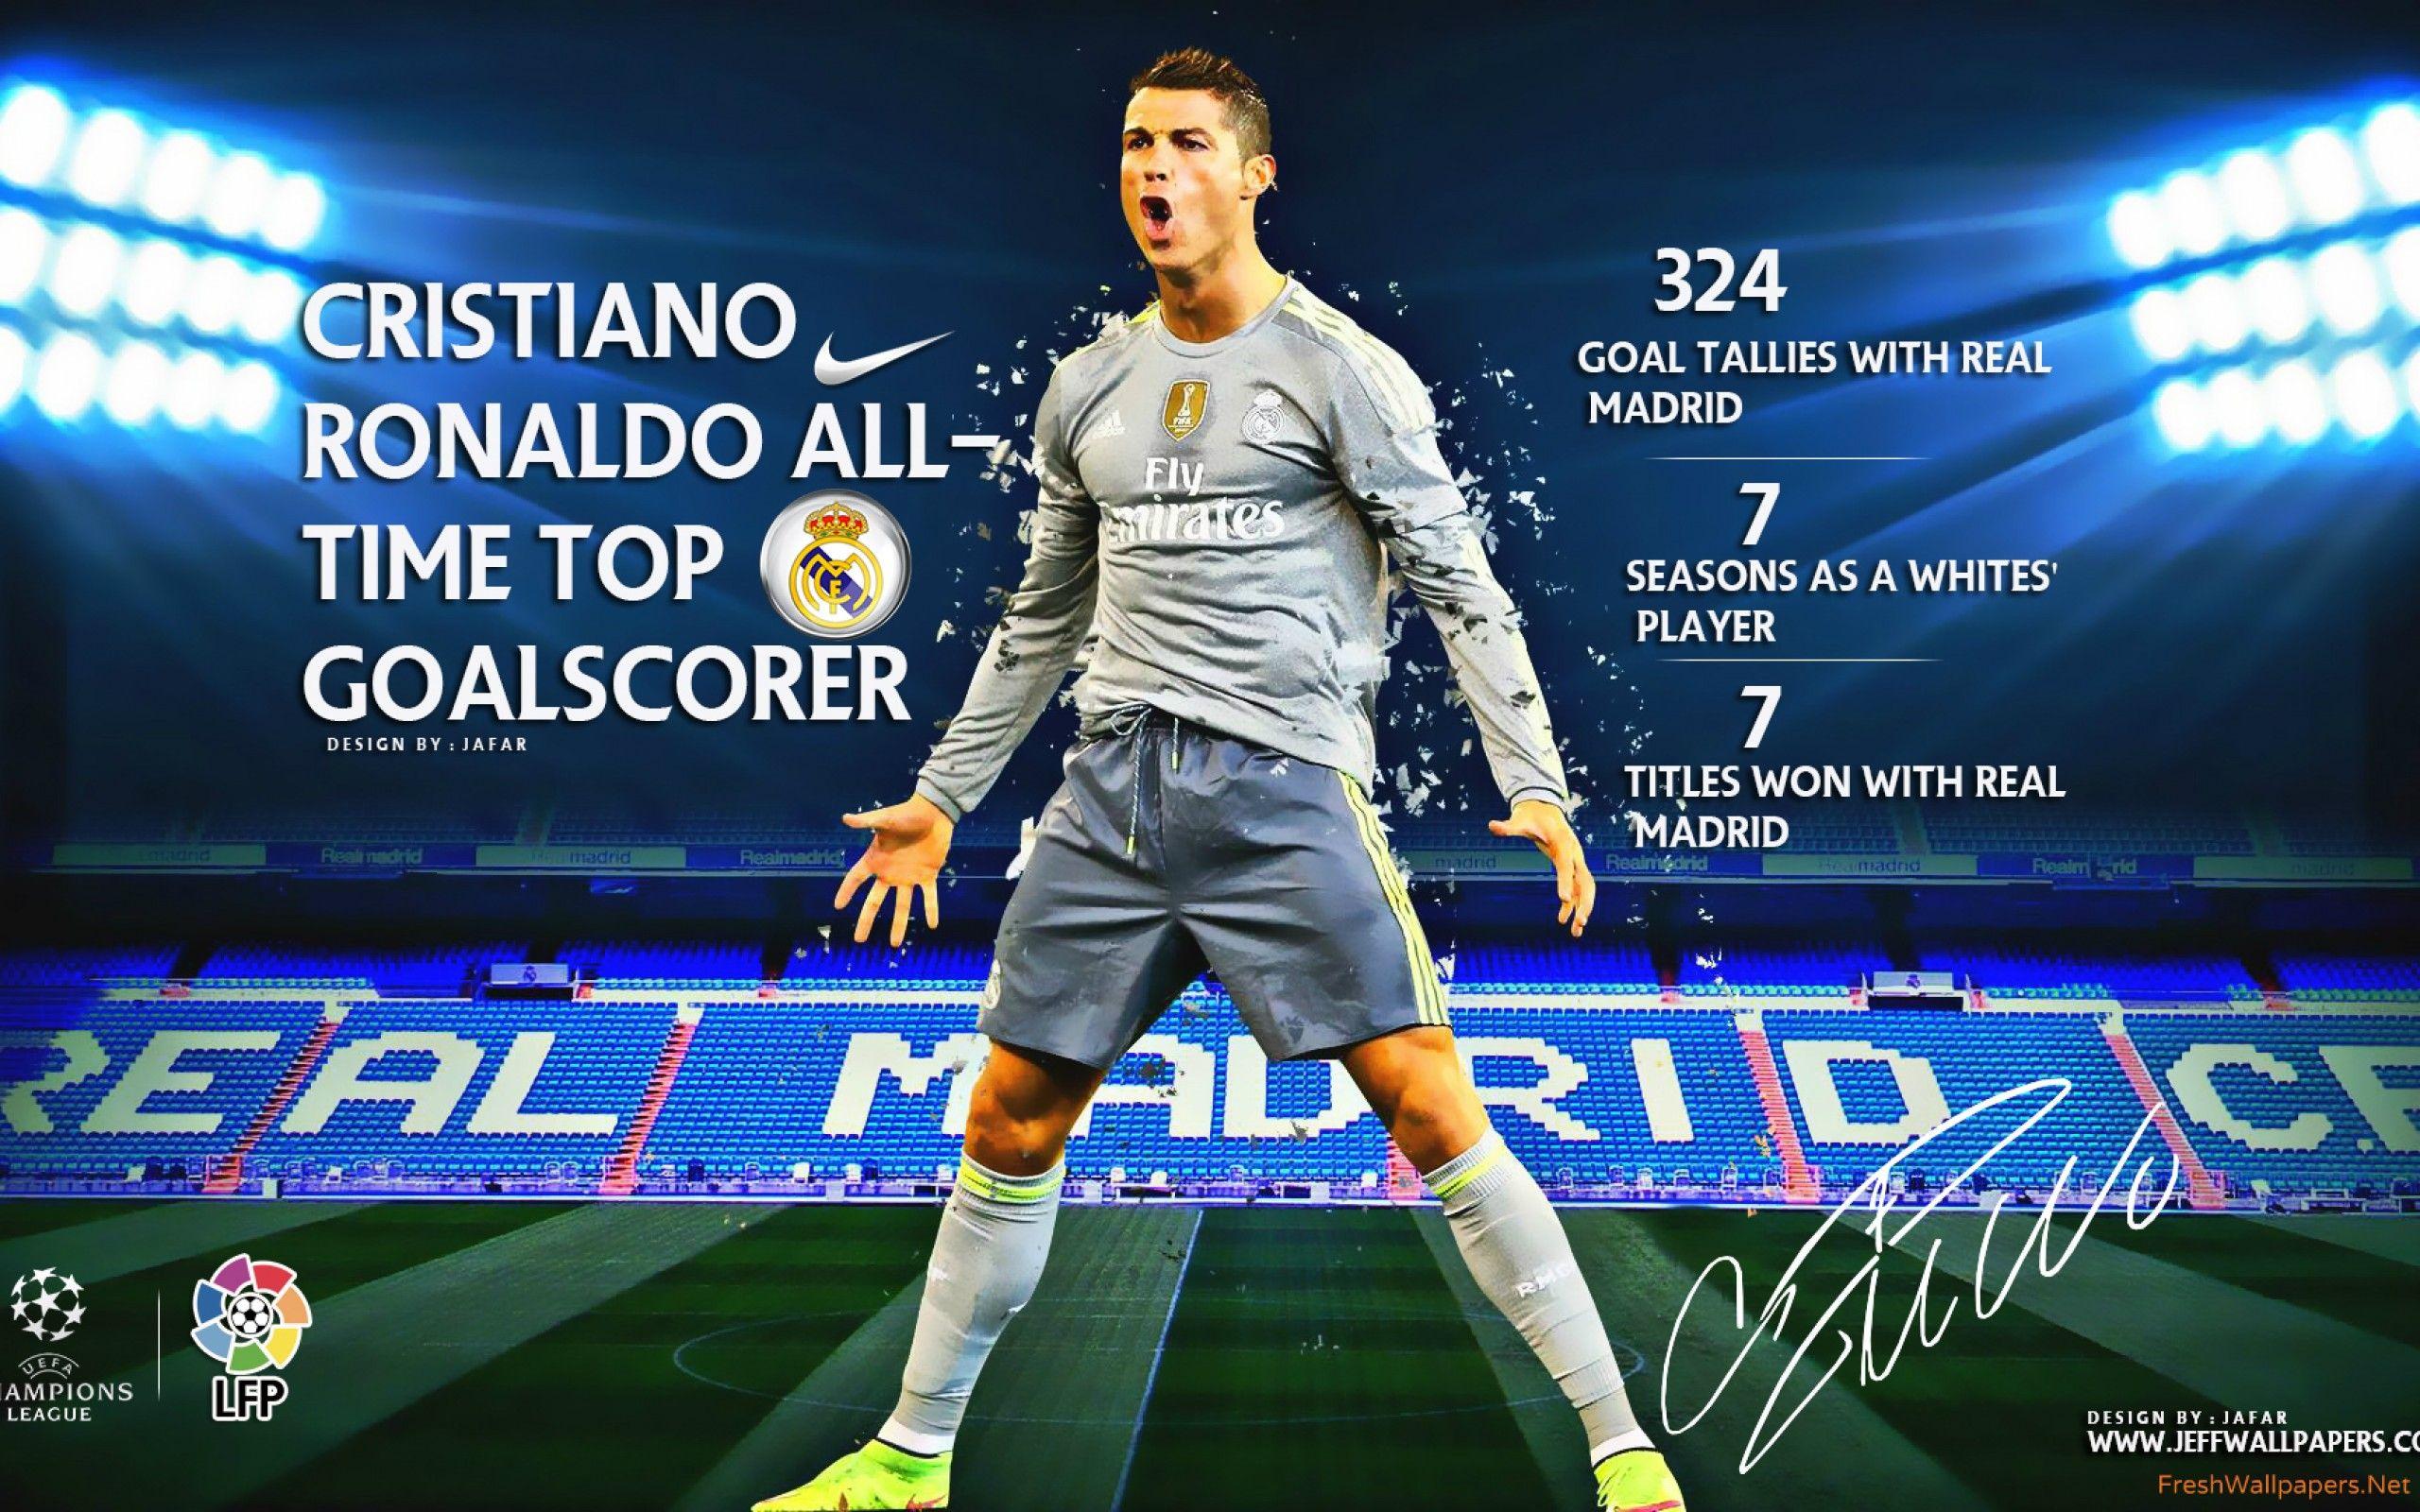 Cristiano Ronaldo 2016 Wallpaper, HD Cristiano Ronaldo 2016